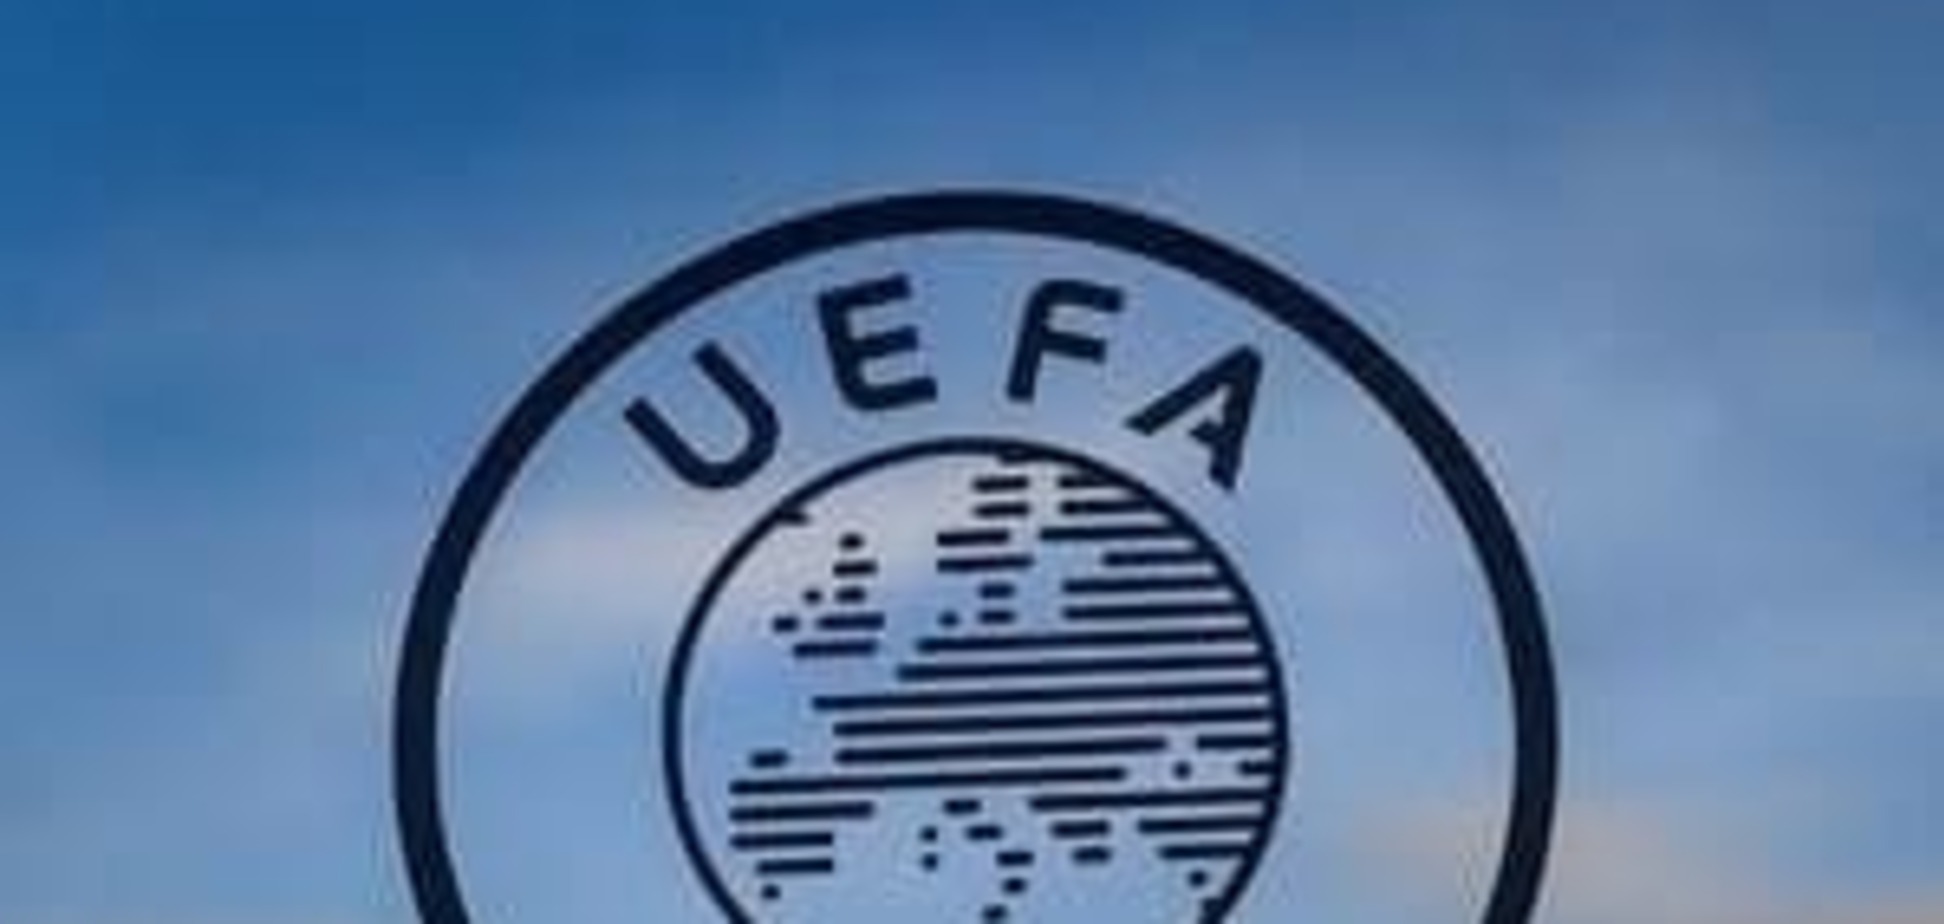 Таблица коэффициентов УЕФА: стабильность Украины, падение Нидерландов